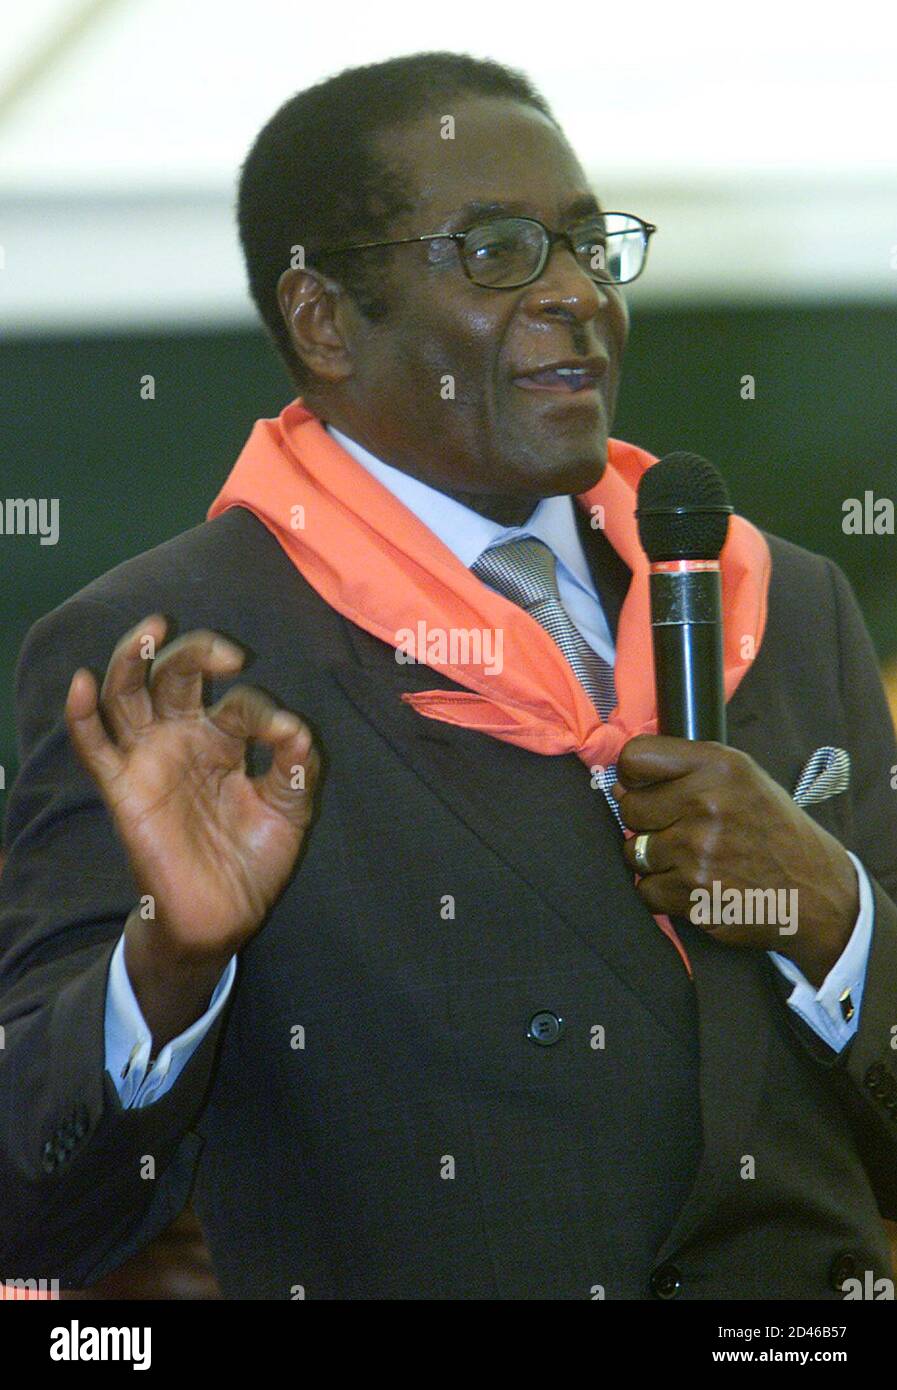 El presidente de Zimbabwe, Robert Mugabe, pronunció un discurso en sus celebraciones oficiales celebradas por la juventud de Zimbabwe y el Movimiento 21 de febrero en la ciudad turística de Victoria Falls el 24 de febrero de 2001. Mugabe, que tenía 77 años el miércoles, prometió seguir adelante con su controvertido programa de reforma agraria, diciendo que era la única solución a la crisis económica del país. HB/AA Foto de stock